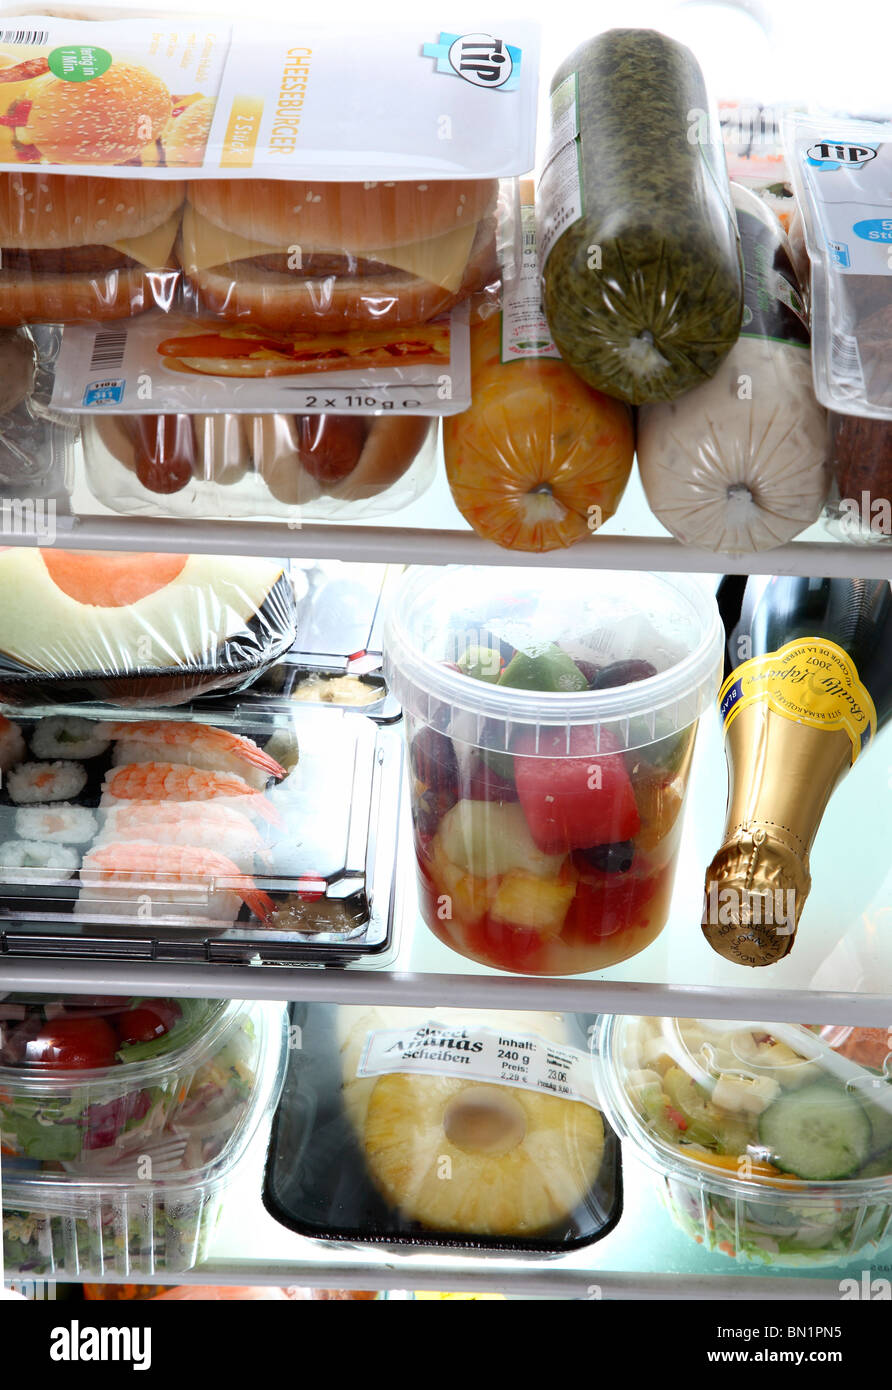 Kühlschrank gefüllt mit verschiedenen Convenience-Food-Produkten. Alle Ready-to-eat Mahlzeiten. Salat, Fleisch, Speisen, Sushi, Gemüse. Stockfoto